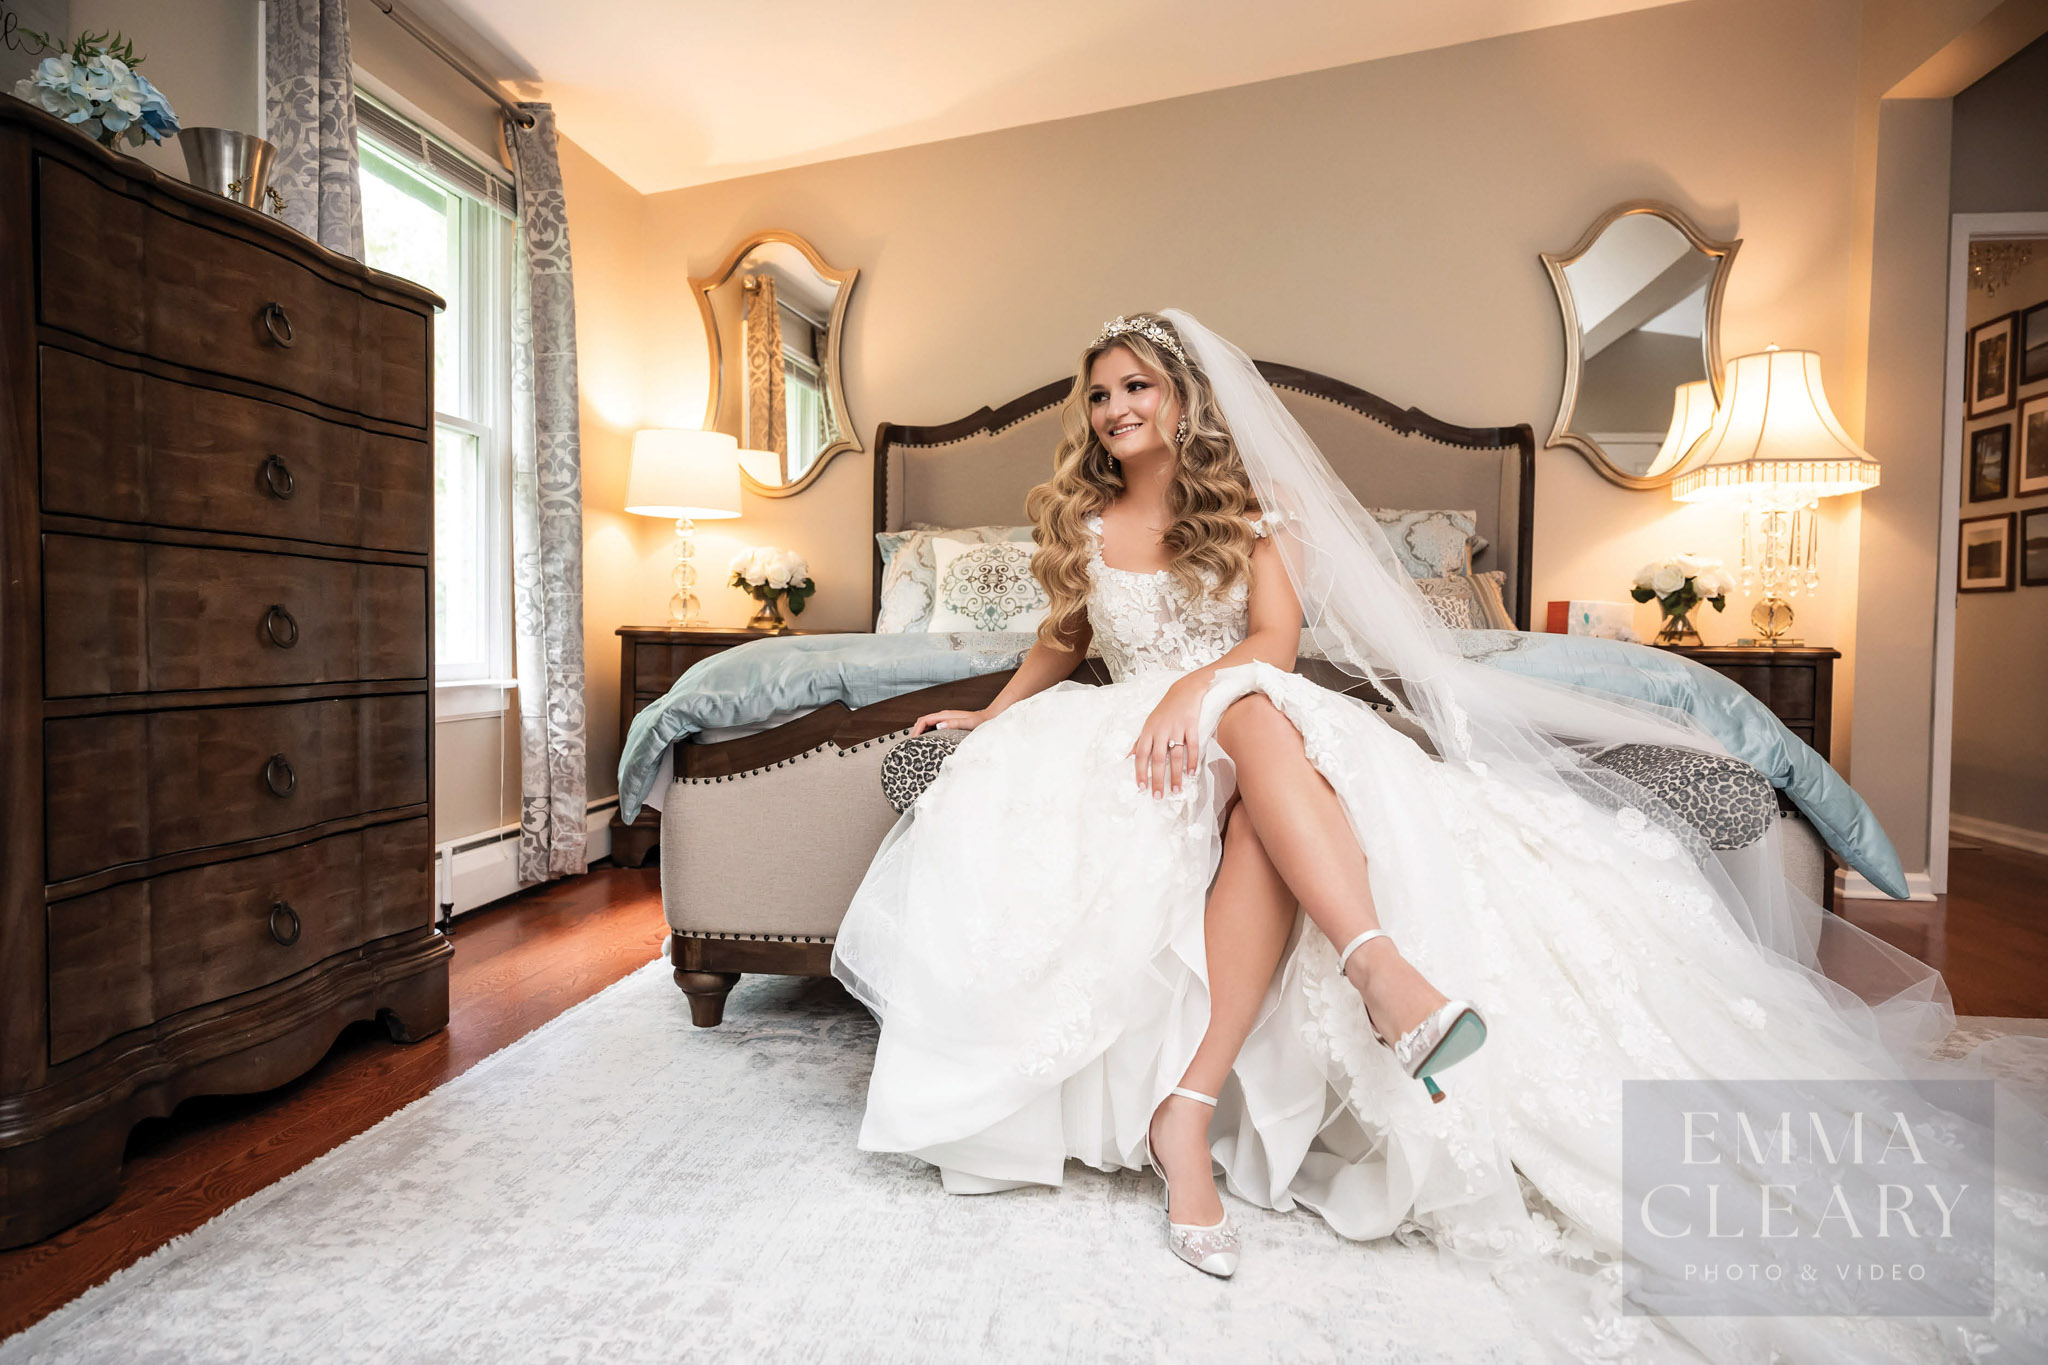 Beautiful indoor photo of the bride